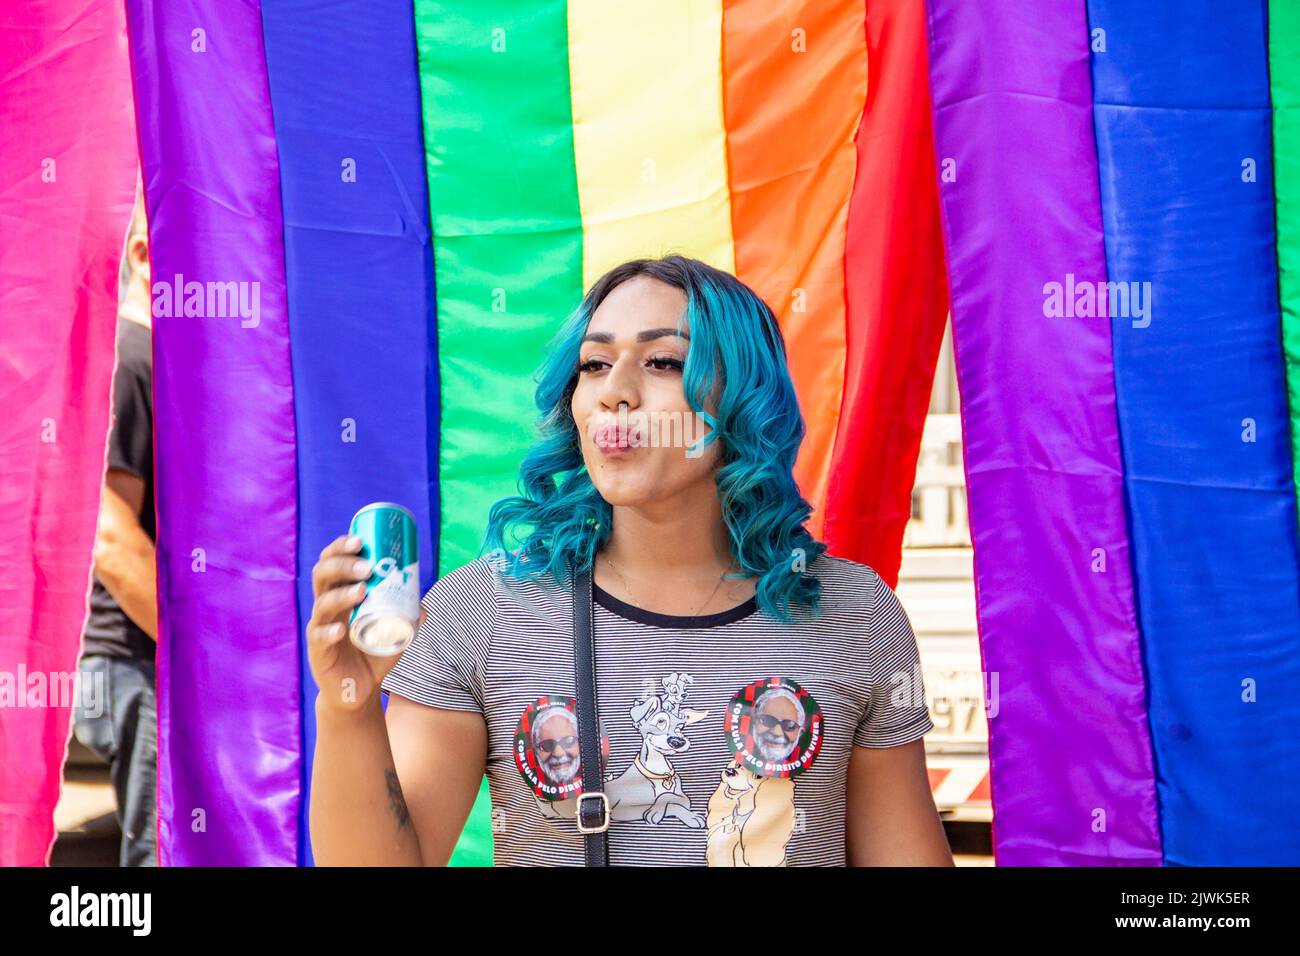 Goias, Brésil – 04 septembre 2022 : une fille souriante, ses cheveux teints en bleu avec des drapeaux arc-en-ciel en arrière-plan. Photo prise pendant la parade. Banque D'Images